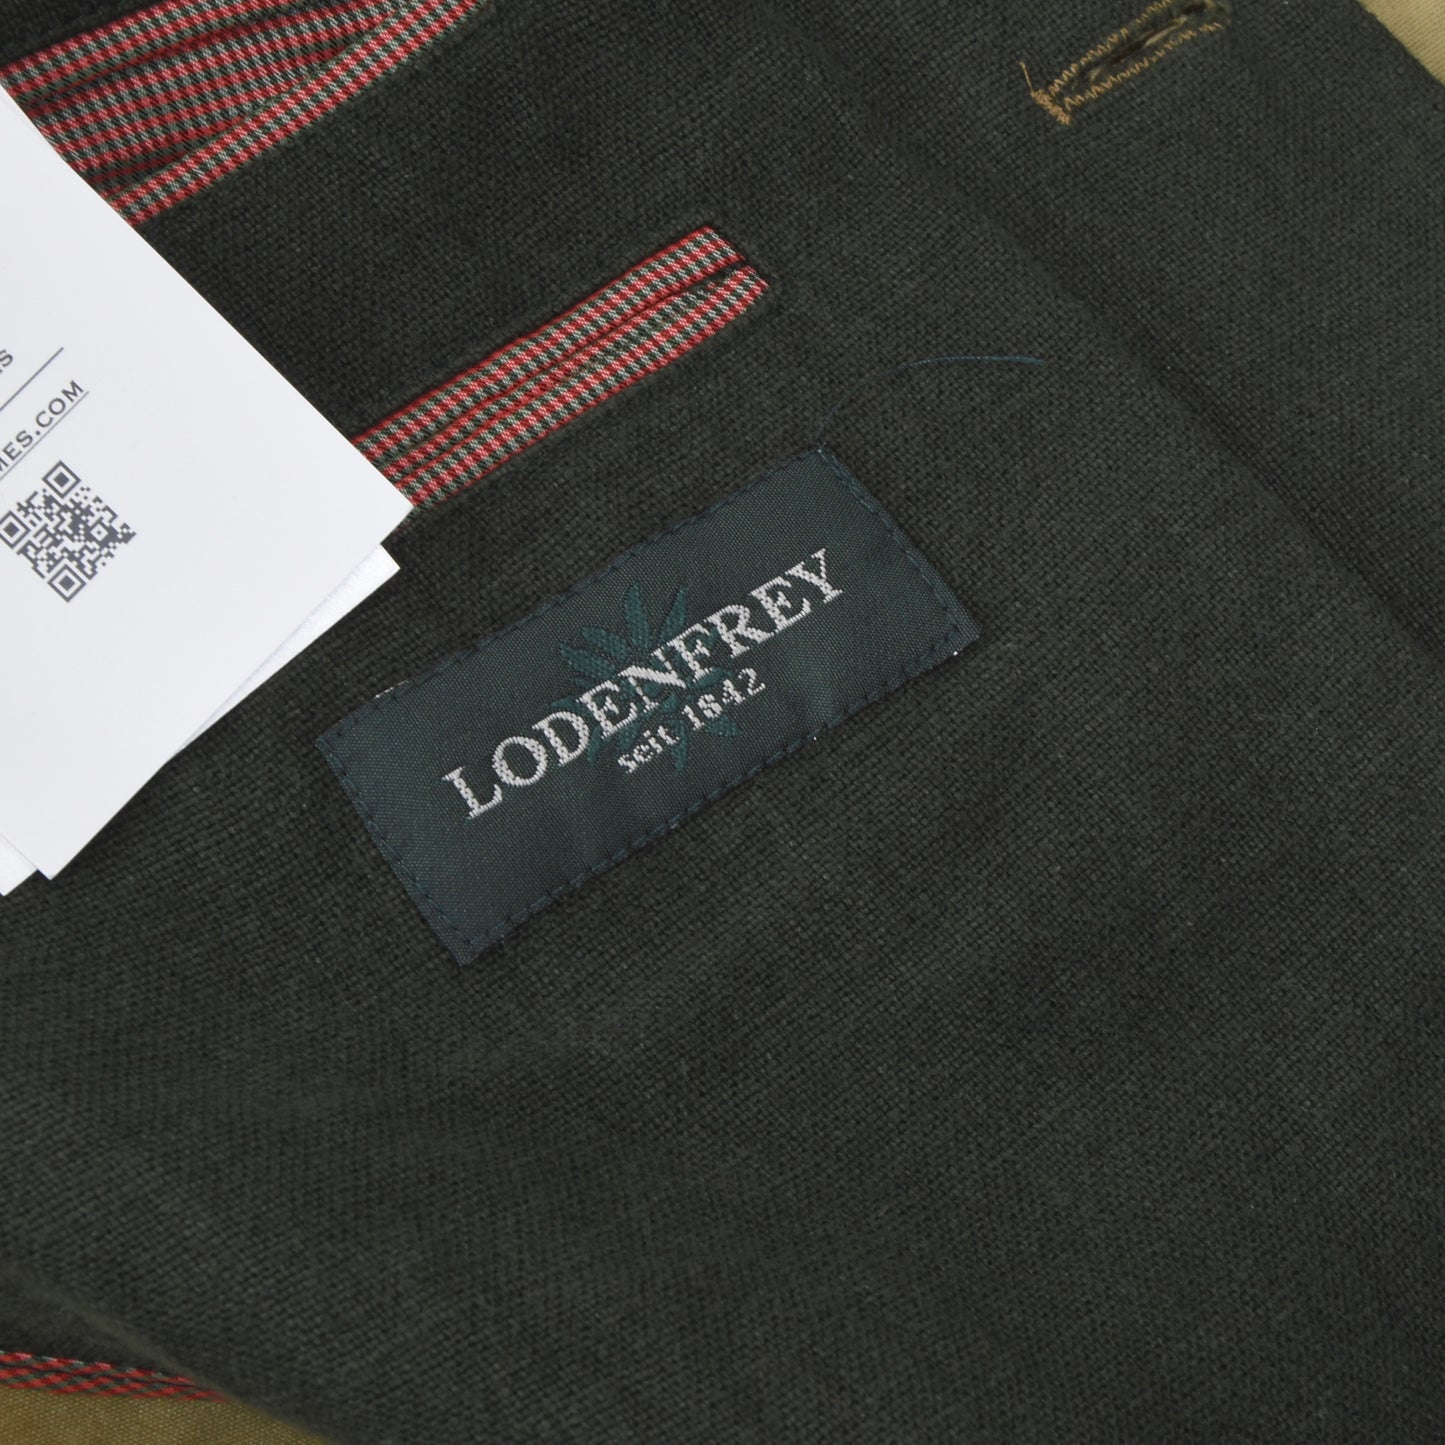 Lodenfrey 1/4 Lined Cotton Janker/Jacket Size 94 - Beige/Tan